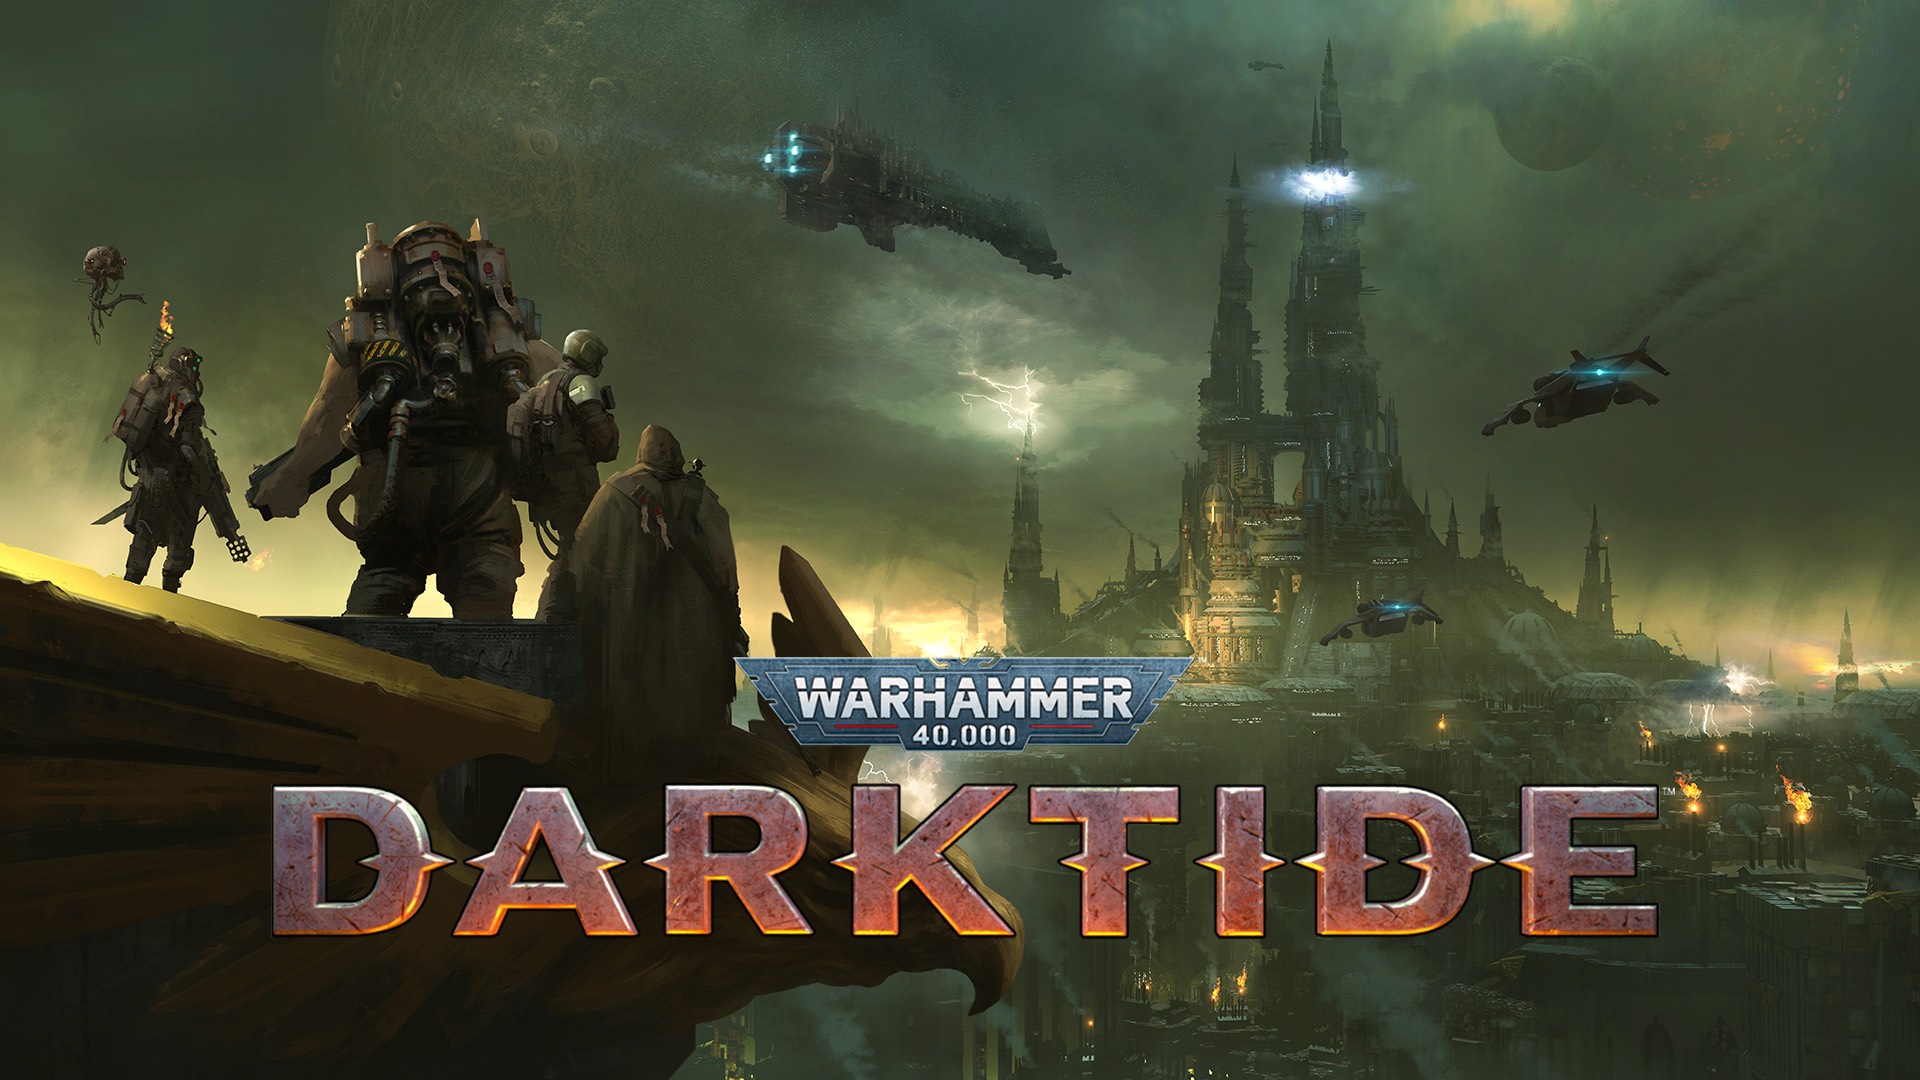 Warhammer 40,000: Darktide Announced